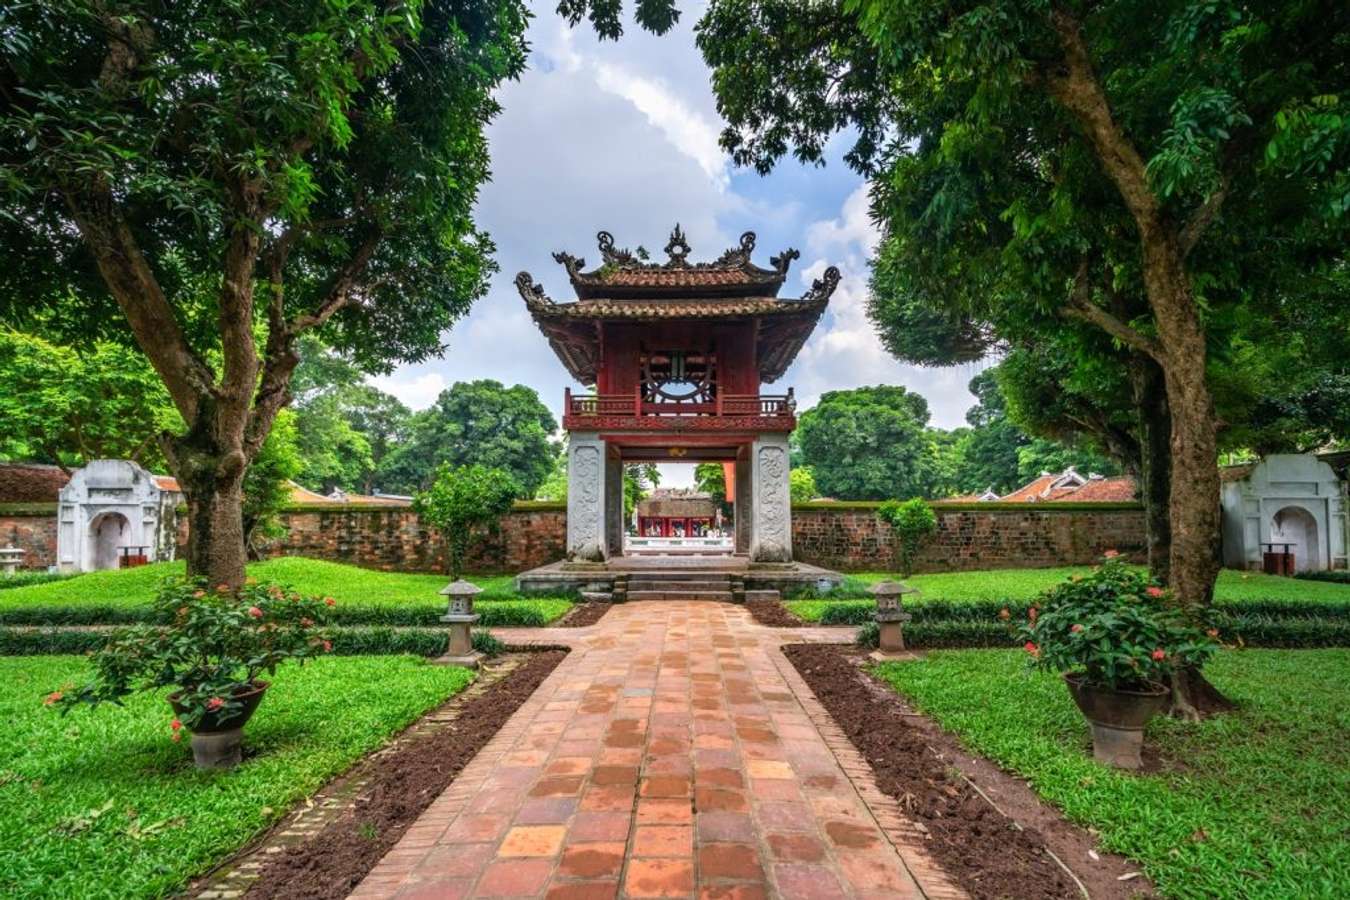 Văn Miếu Quốc Tử Giám là một điểm đến văn hóa lịch sử nổi tiếng tại Hà Nội. Với kiến trúc đặc trưng và một lượng lớn các bia đá với những tên tuổi văn hóa danh tiếng, đây là nơi lý tưởng để khám phá về văn hóa Việt Nam truyền thống. Xem hình ảnh liên quan để tìm hiểu thêm về Văn Miếu Quốc Tử Giám của chúng tôi.